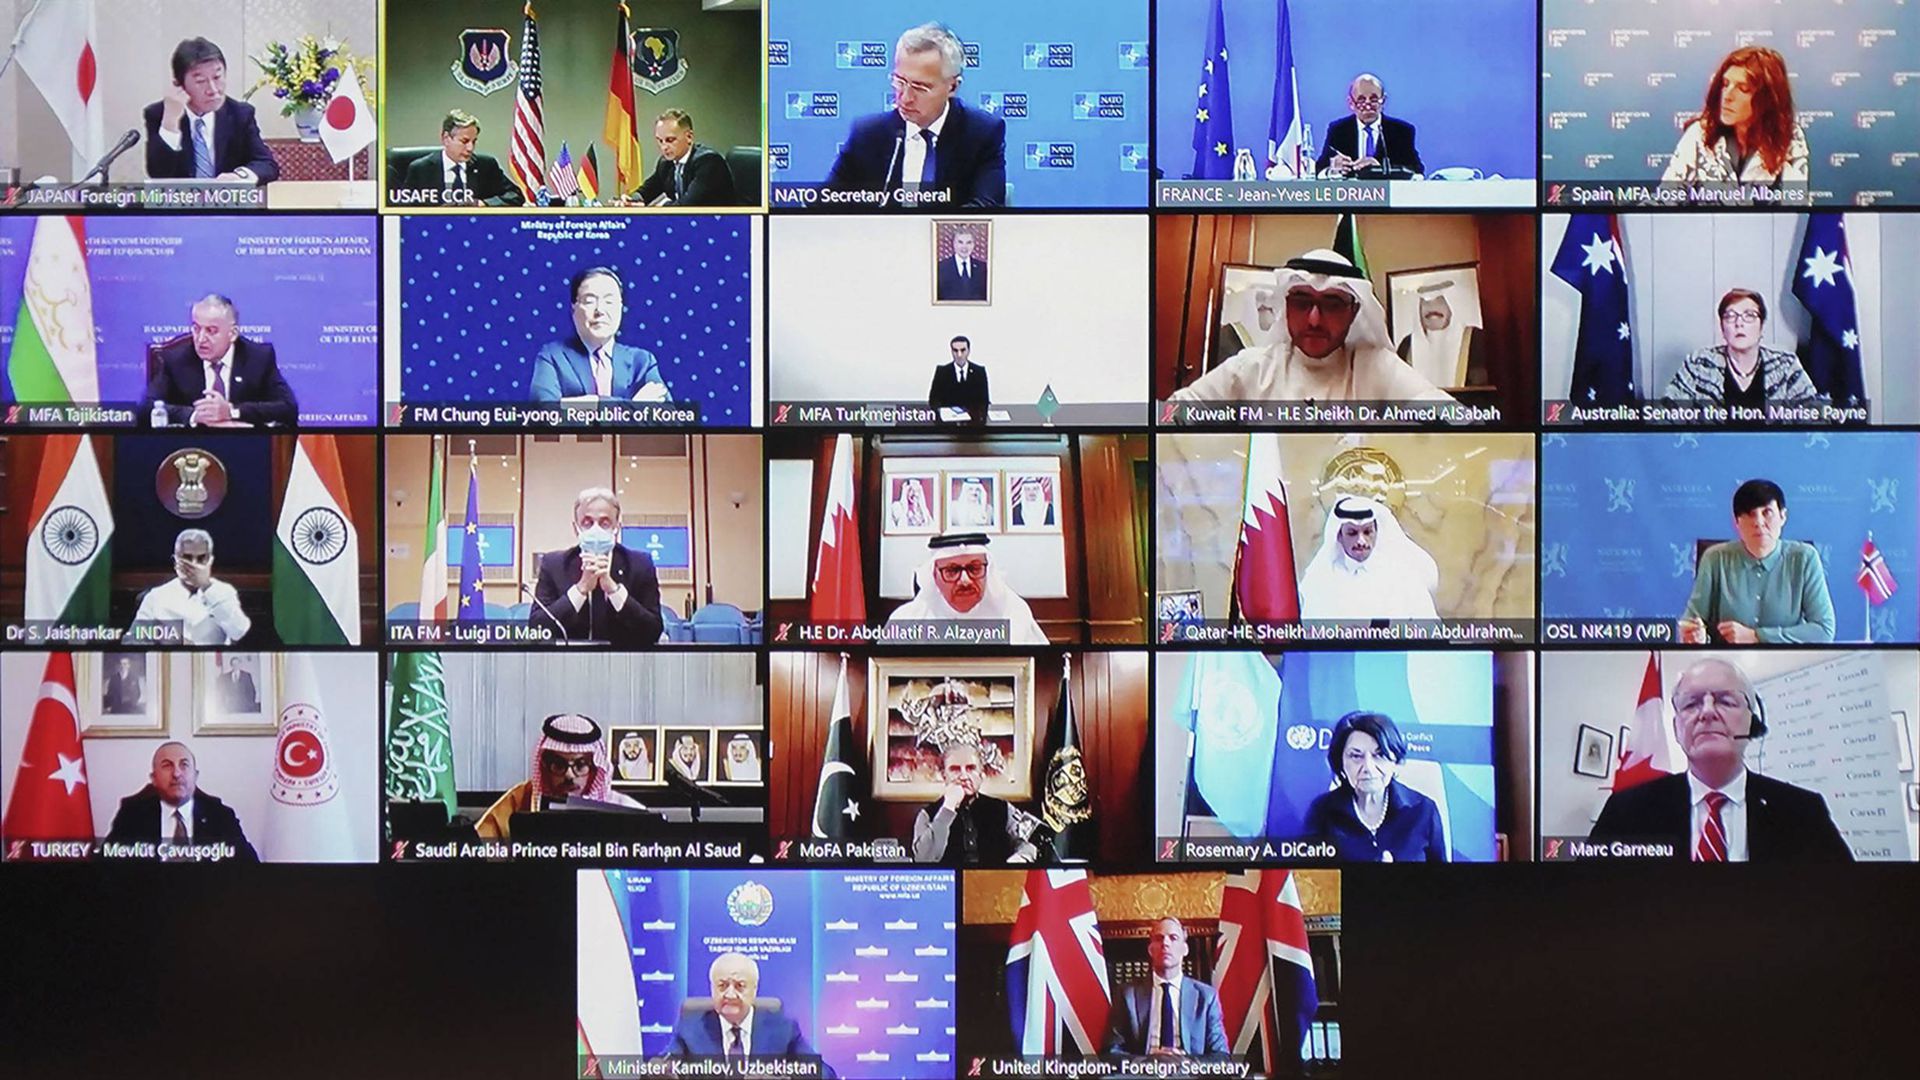 阿富汗局势 美德主持阿问题22国部长级会议中方表态 多维新闻 全球